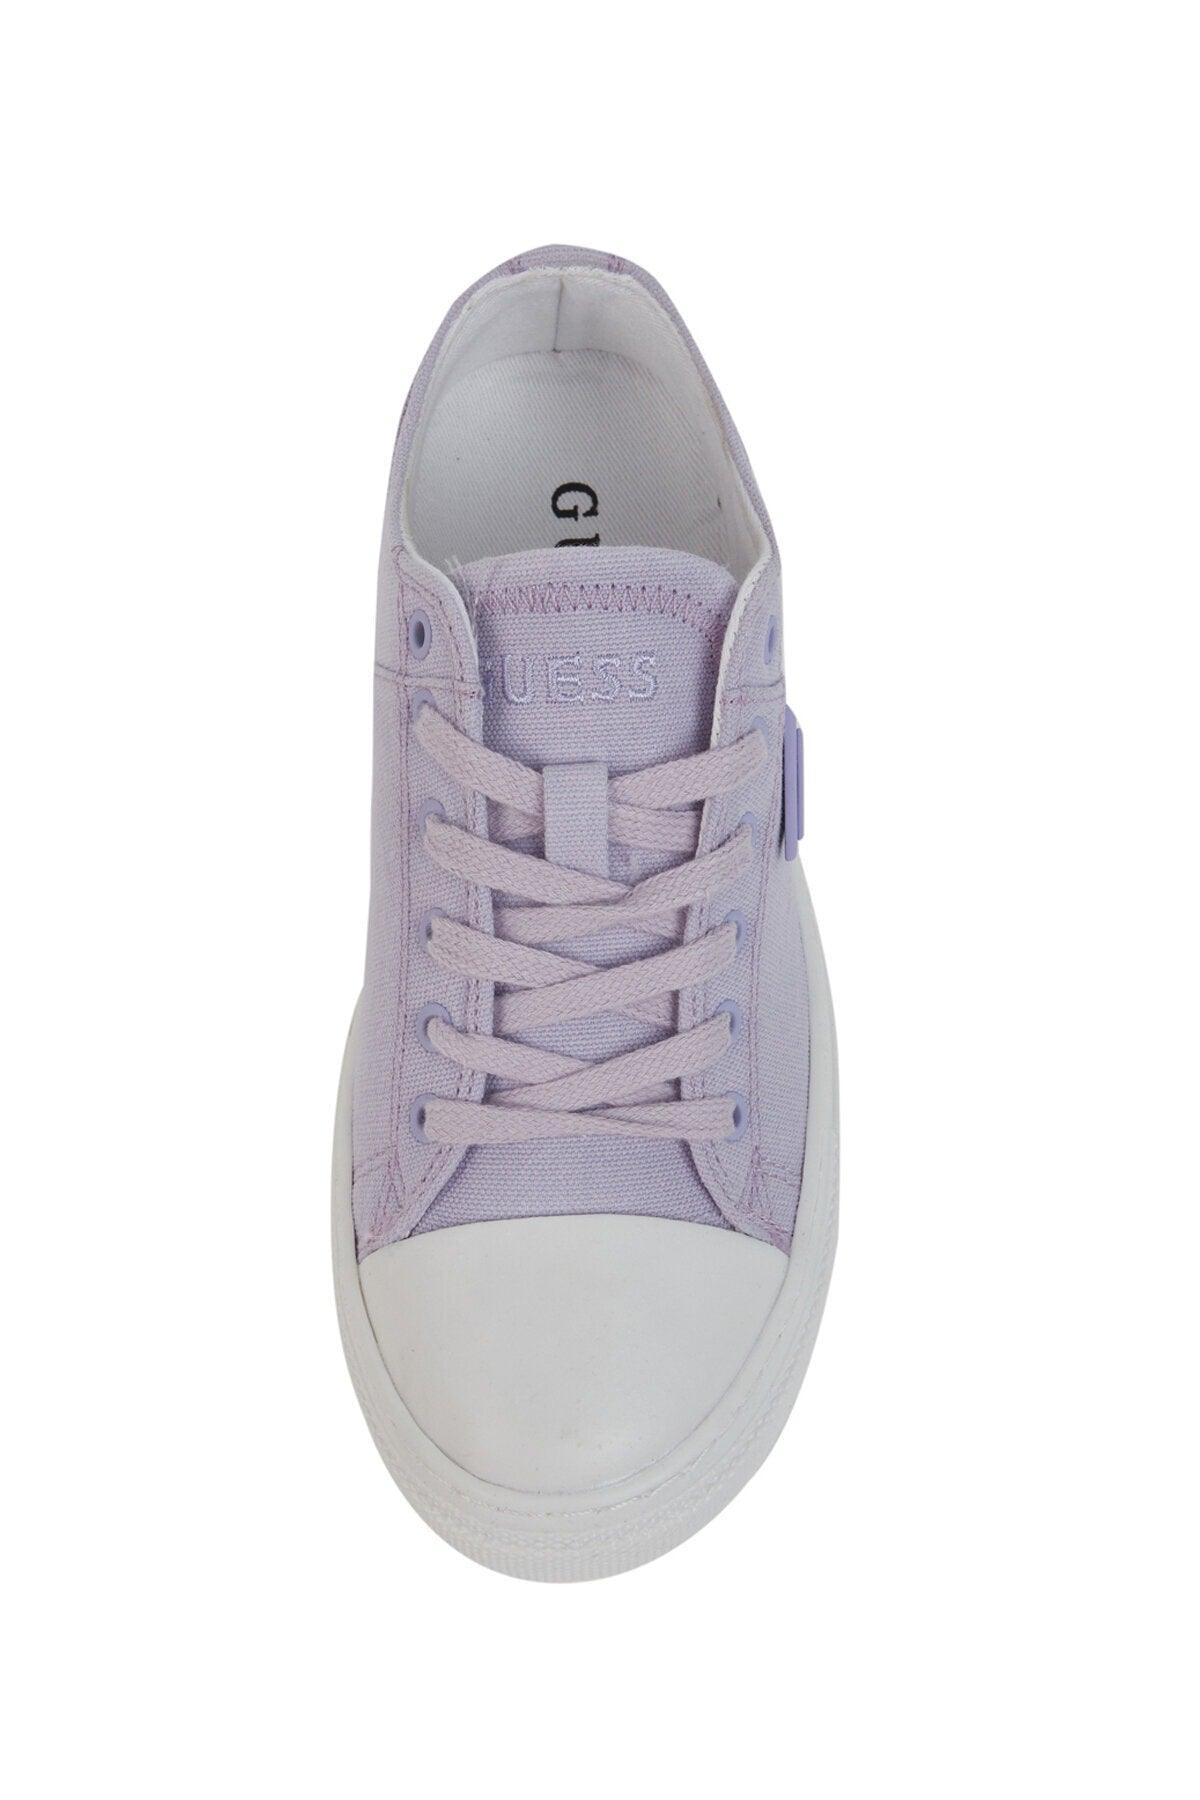 Purple - Pranze Women's Sneaker Shoes - Swordslife